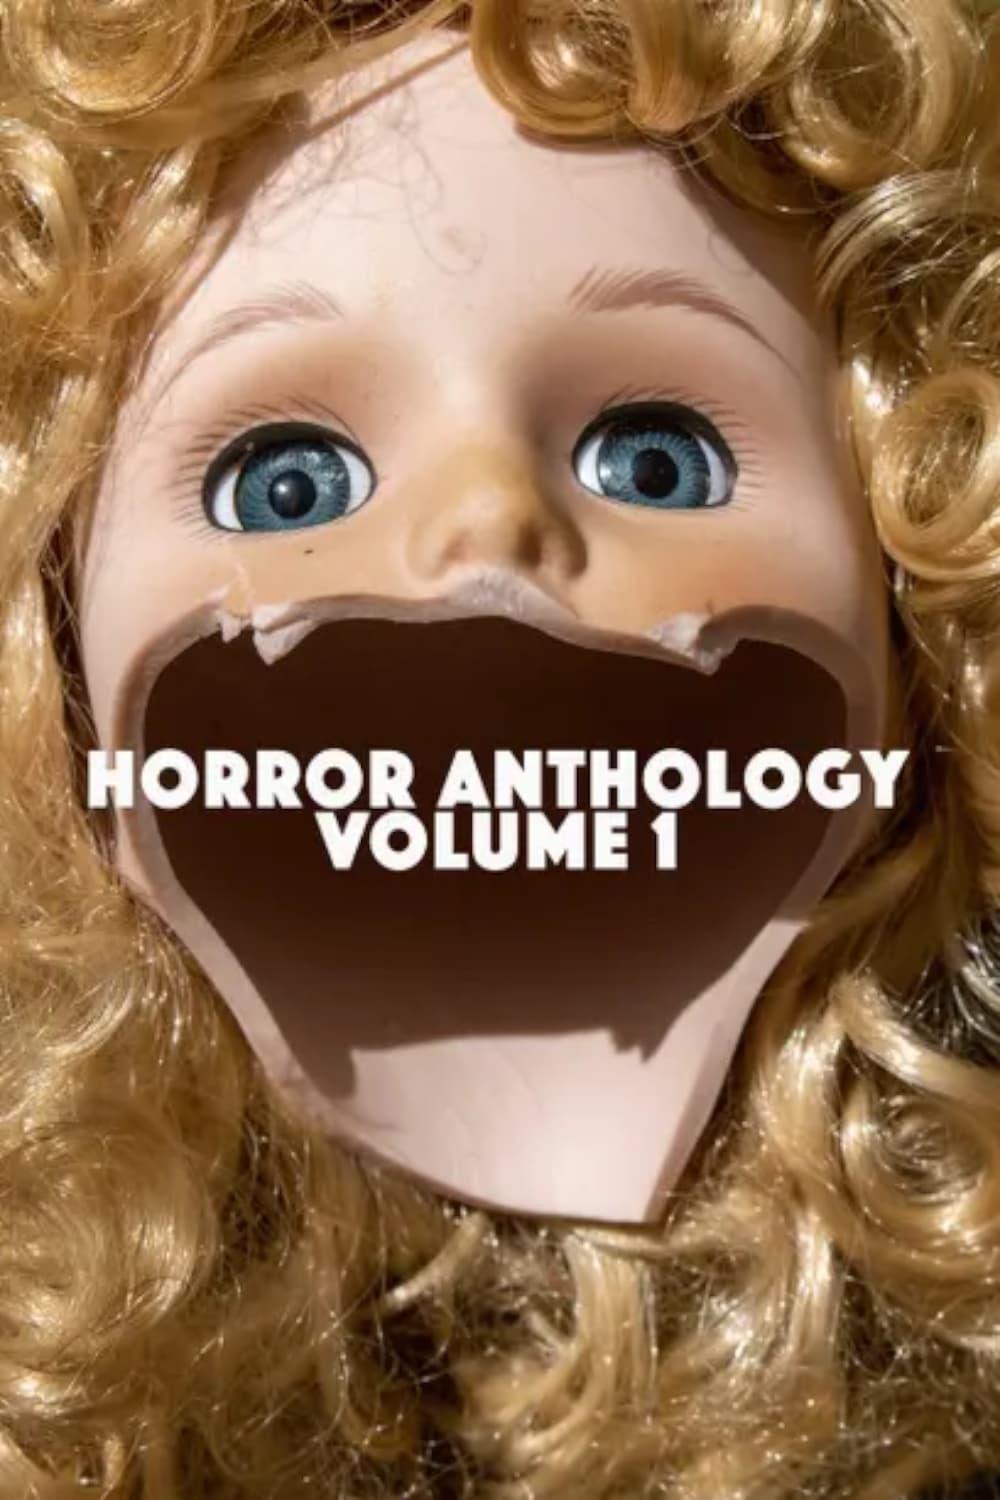 Horror Anthology Movie Volume 1 poster